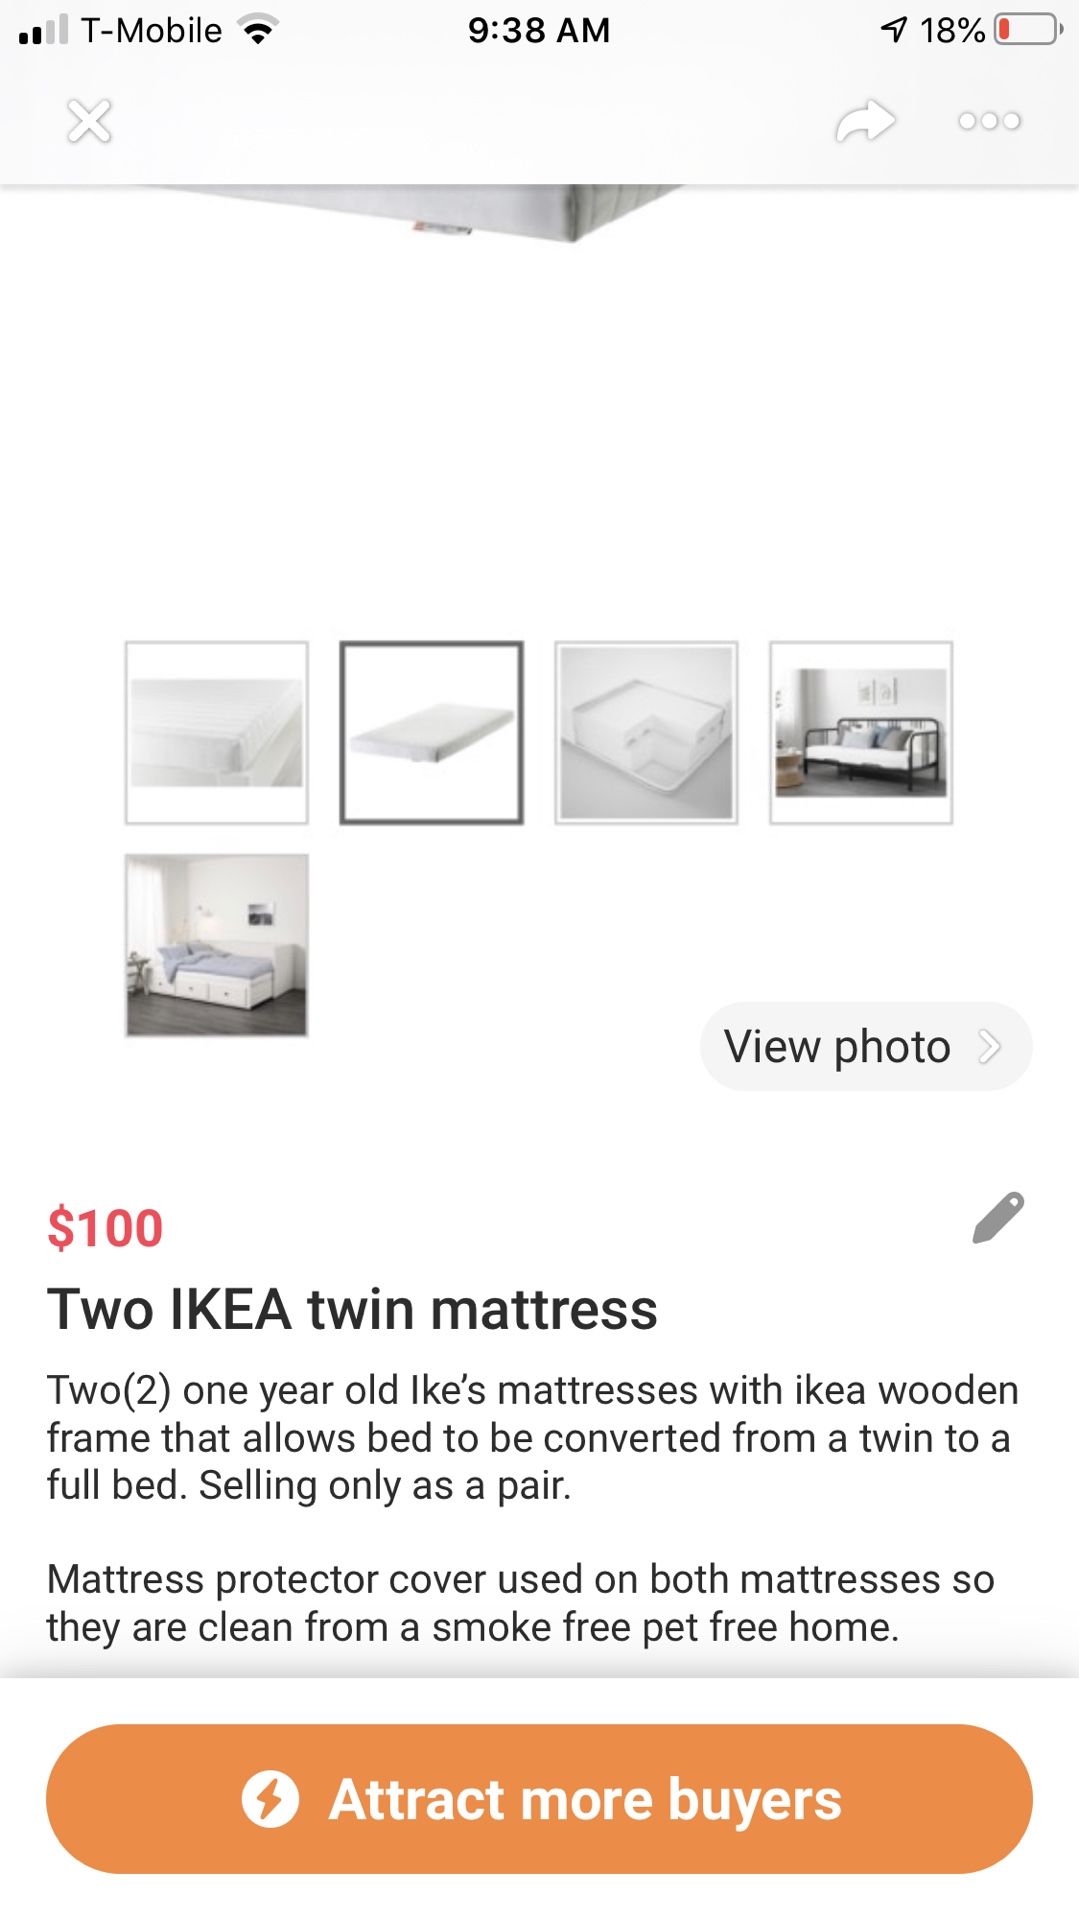 IKEA twin mattresses